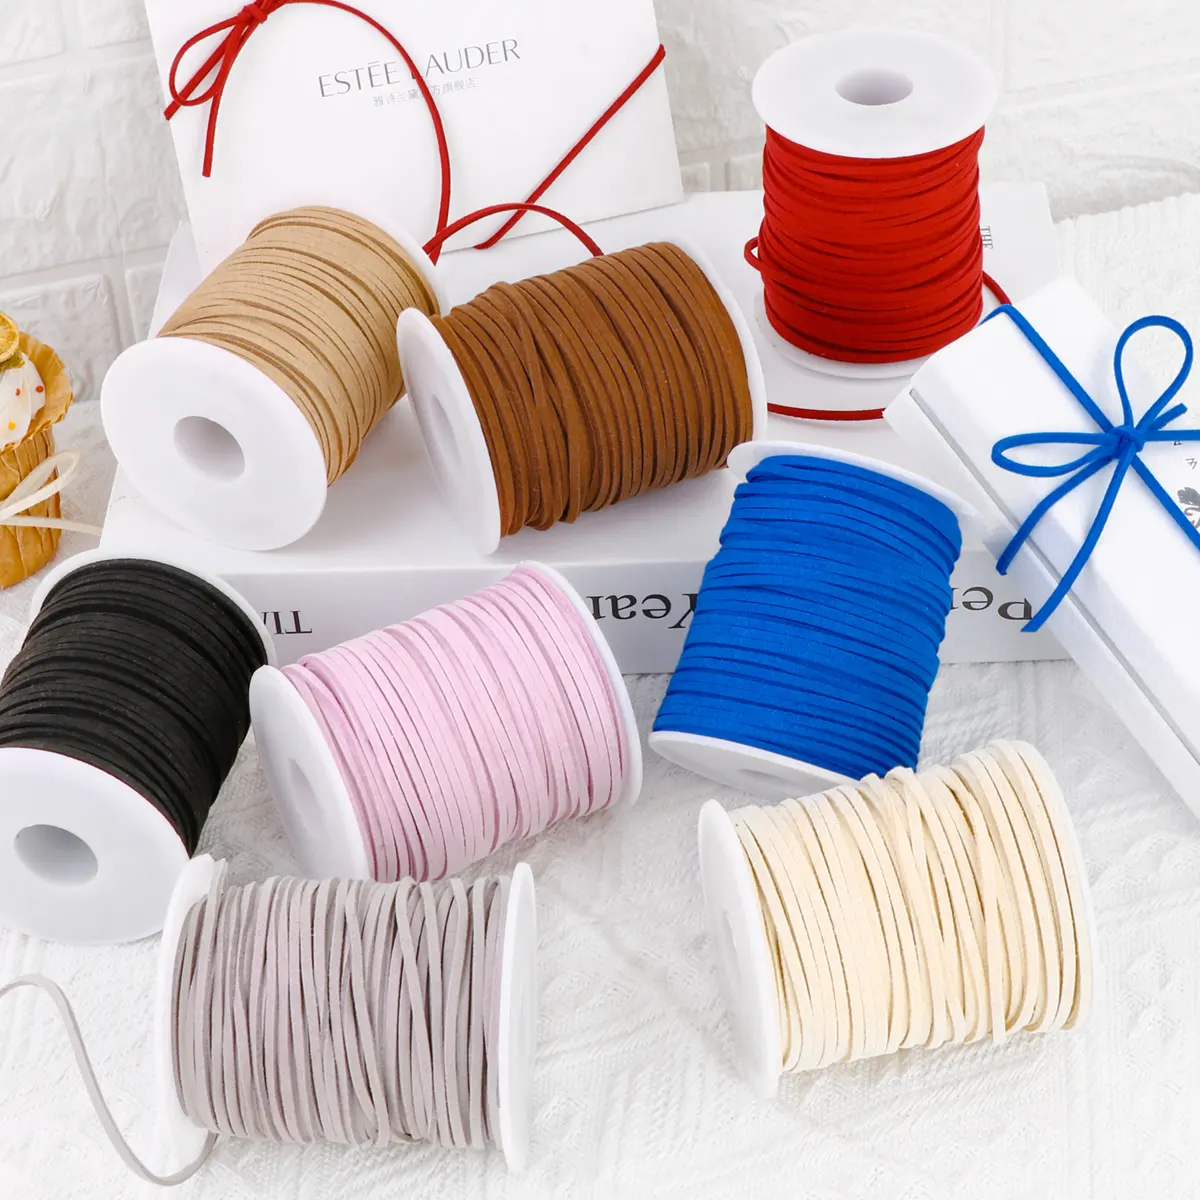 Gypsfy — ruban en peluches colorés de 1/8 pouces, 0.3cm de largeur, pour décoration de cadeau, boulangerie, corde